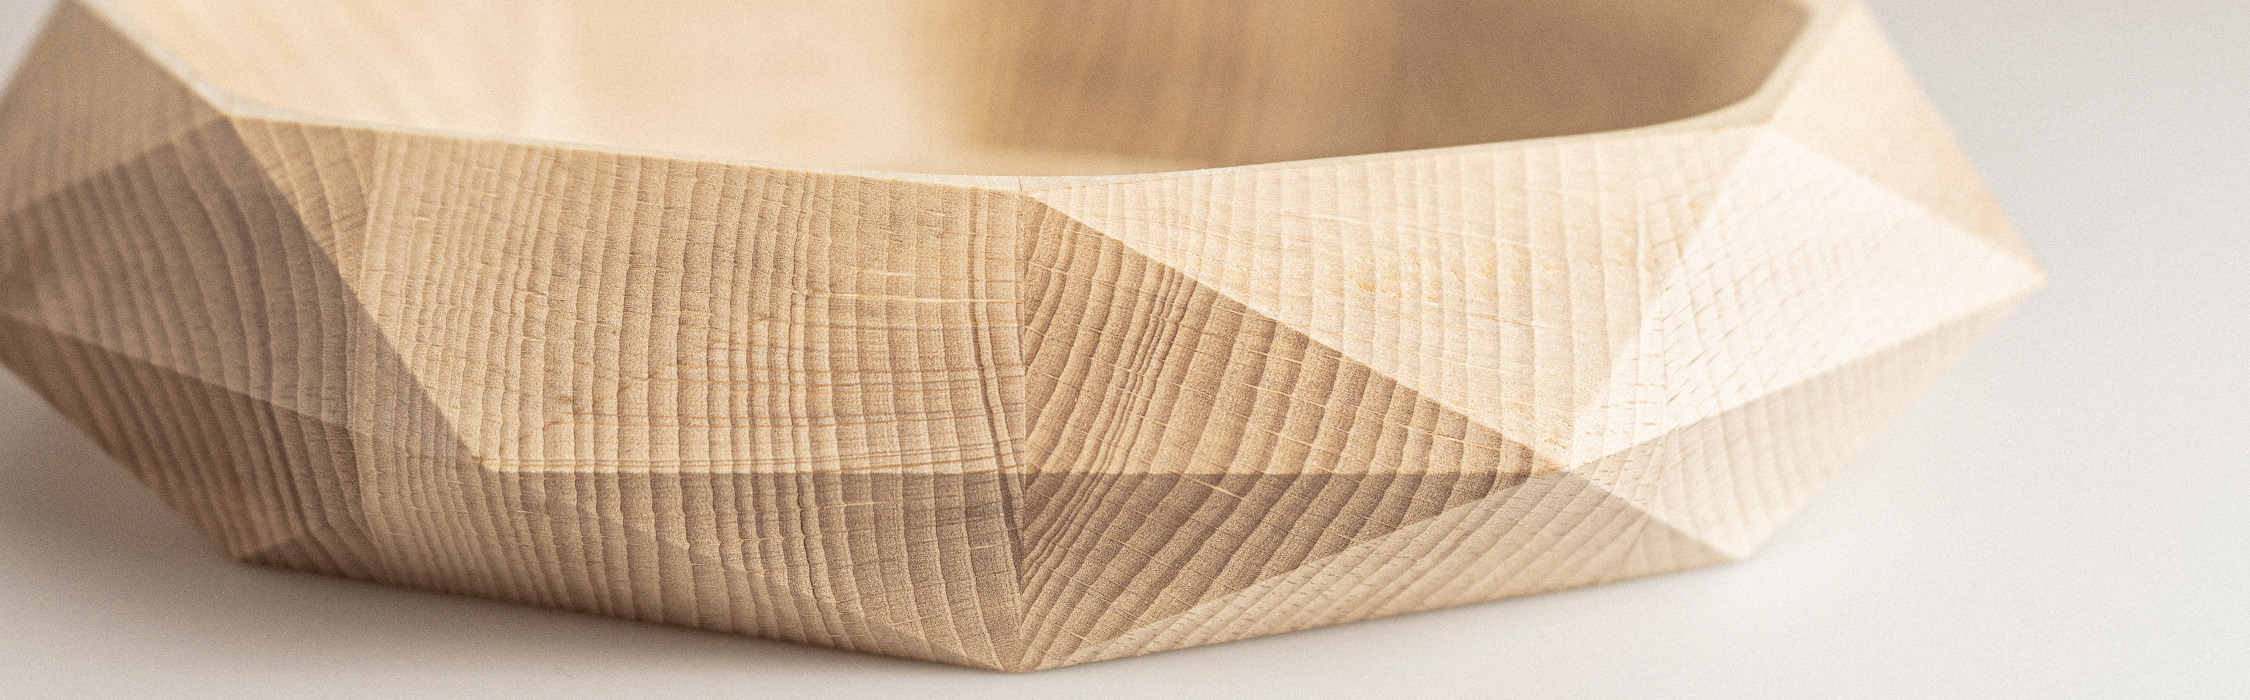 Gli oggetti in legno: arredare in modo naturale e sostenibile - Leonardi  Wood